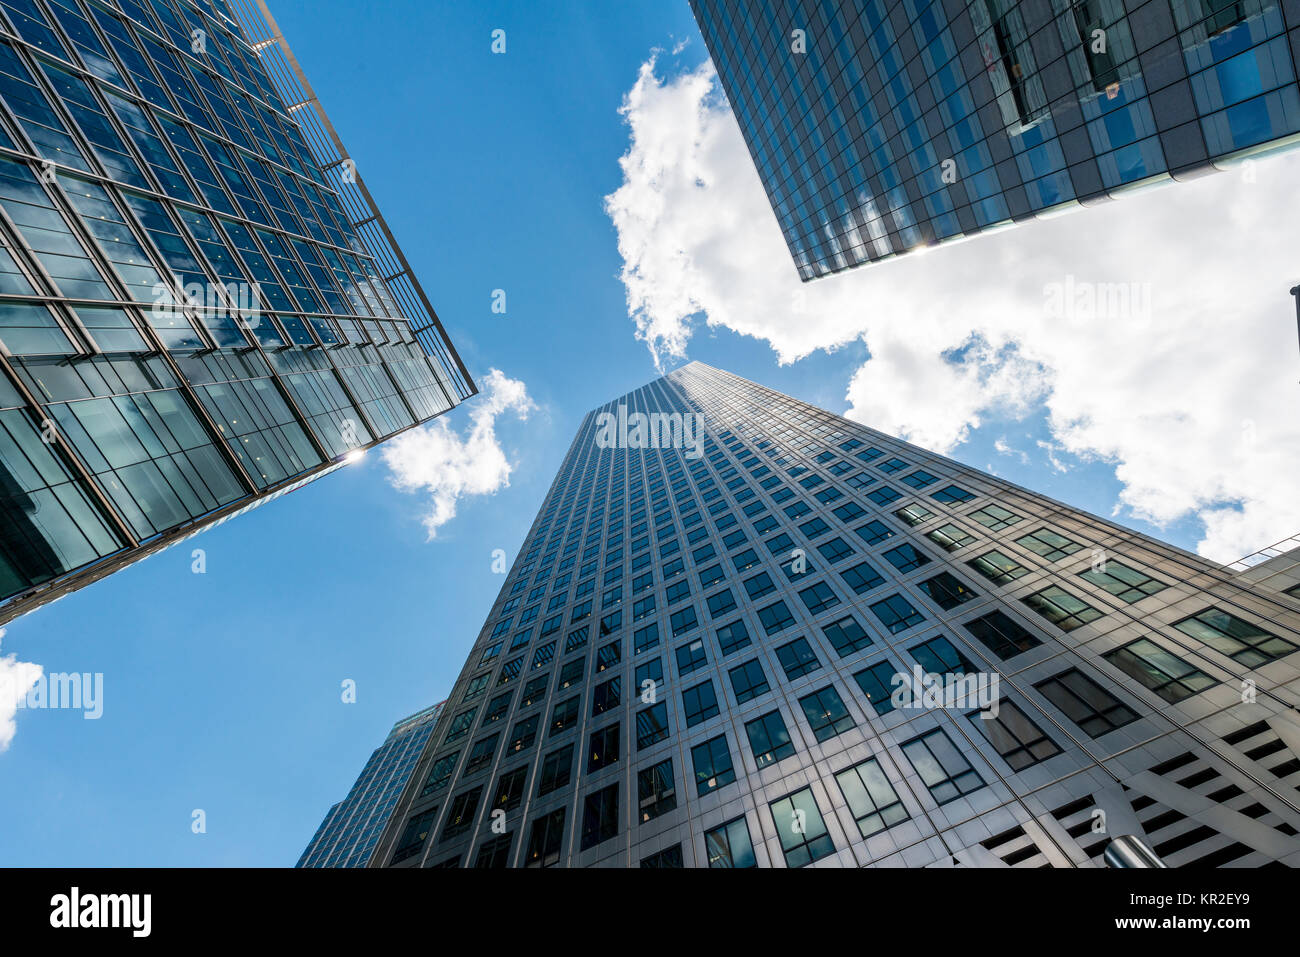 Grattacieli con le facciate in vetro si stagliano verso il cielo, architettura moderna, One Canada Square Canary Wharf a Londra, Inghilterra Foto Stock